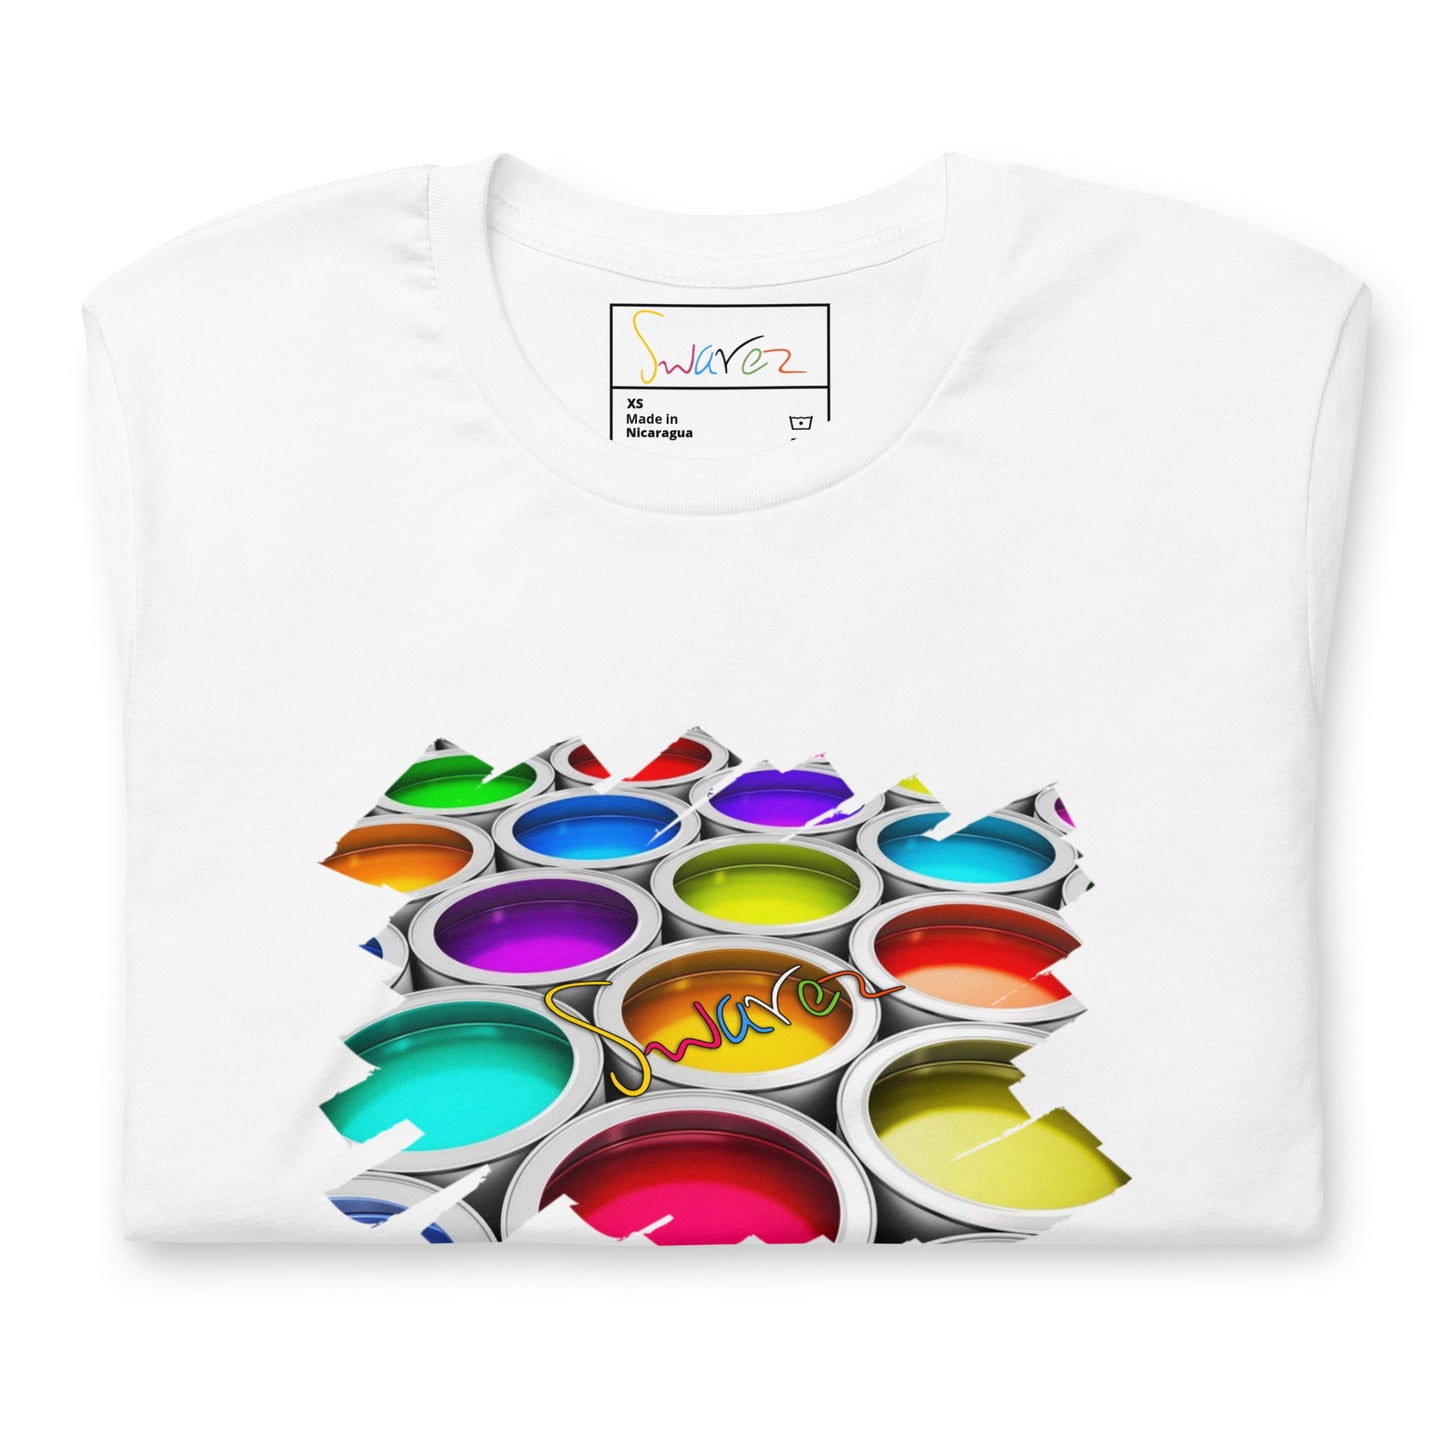 T-shirt unisexo - Latas de tinta coloridas